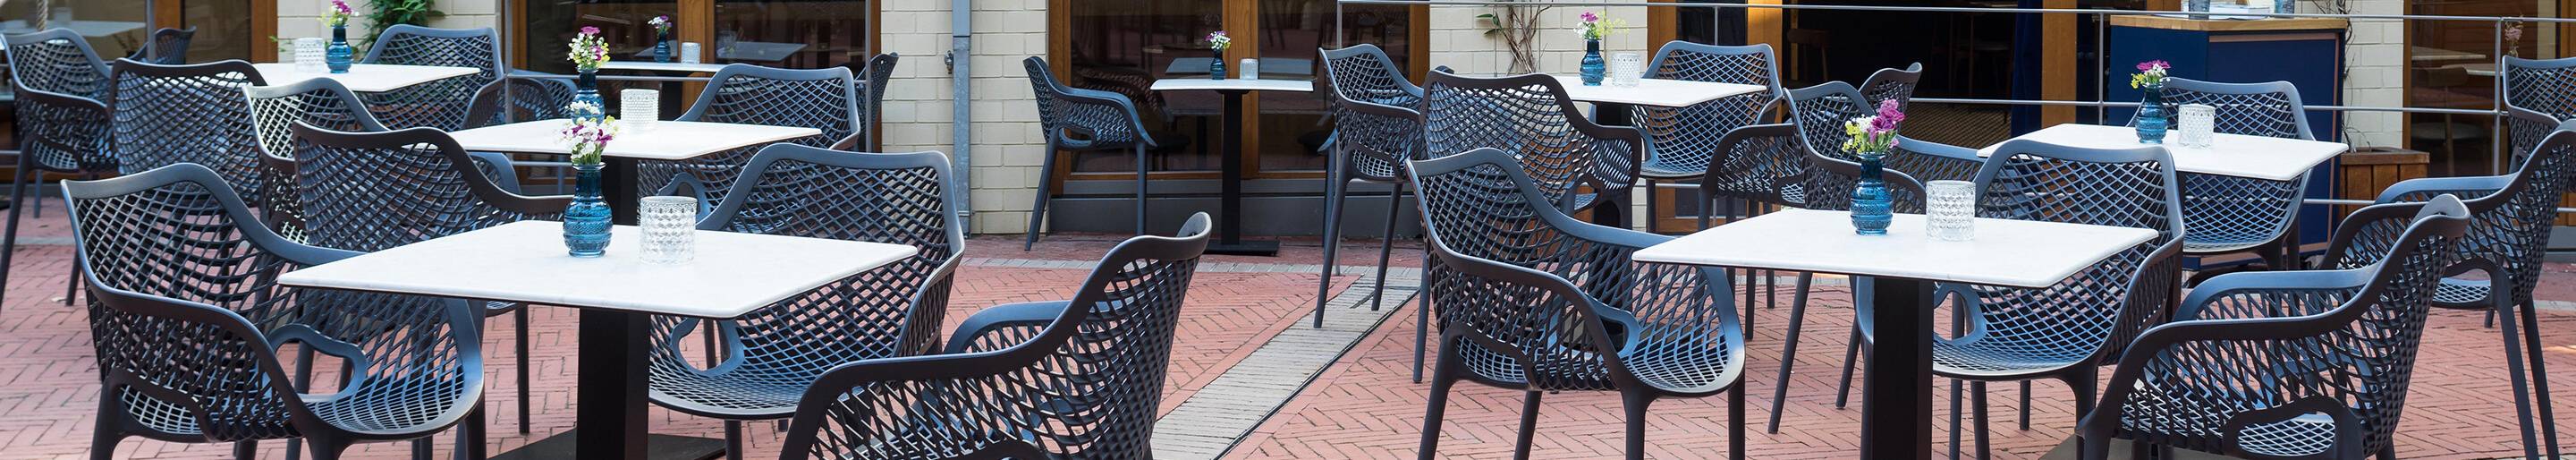 Outdoor Tische für Ihre Gastronomie, Hotellereie oder Biergarten